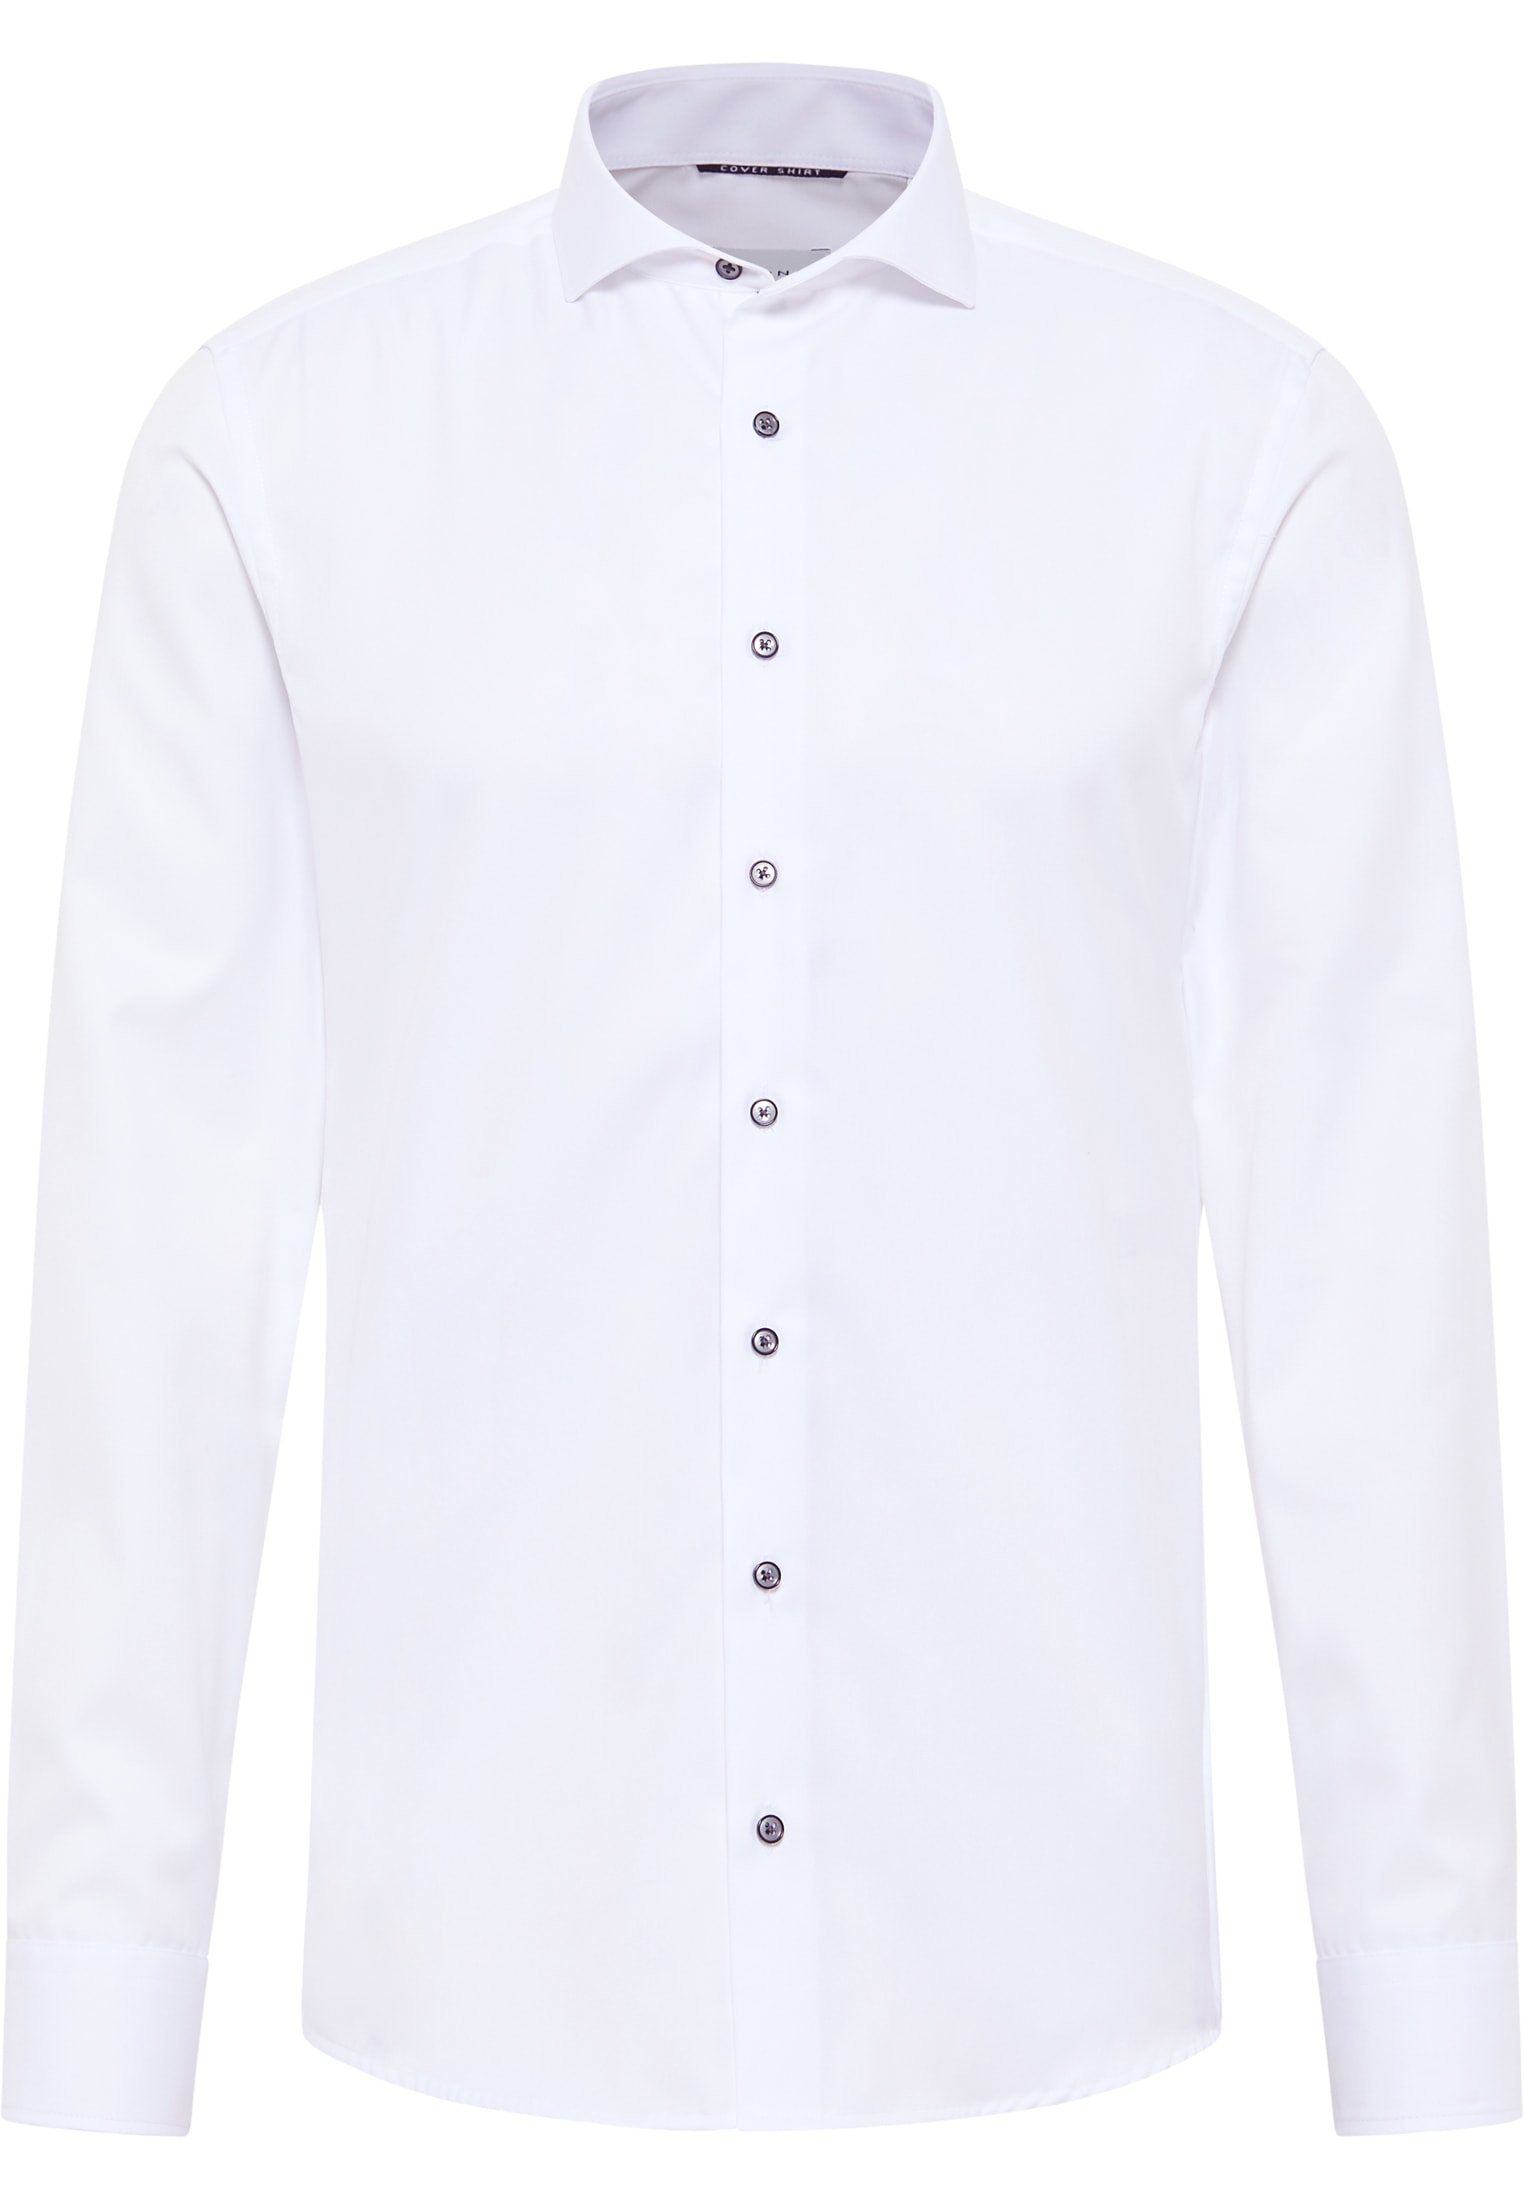 SLIM FIT Cover Shirt blanc uni